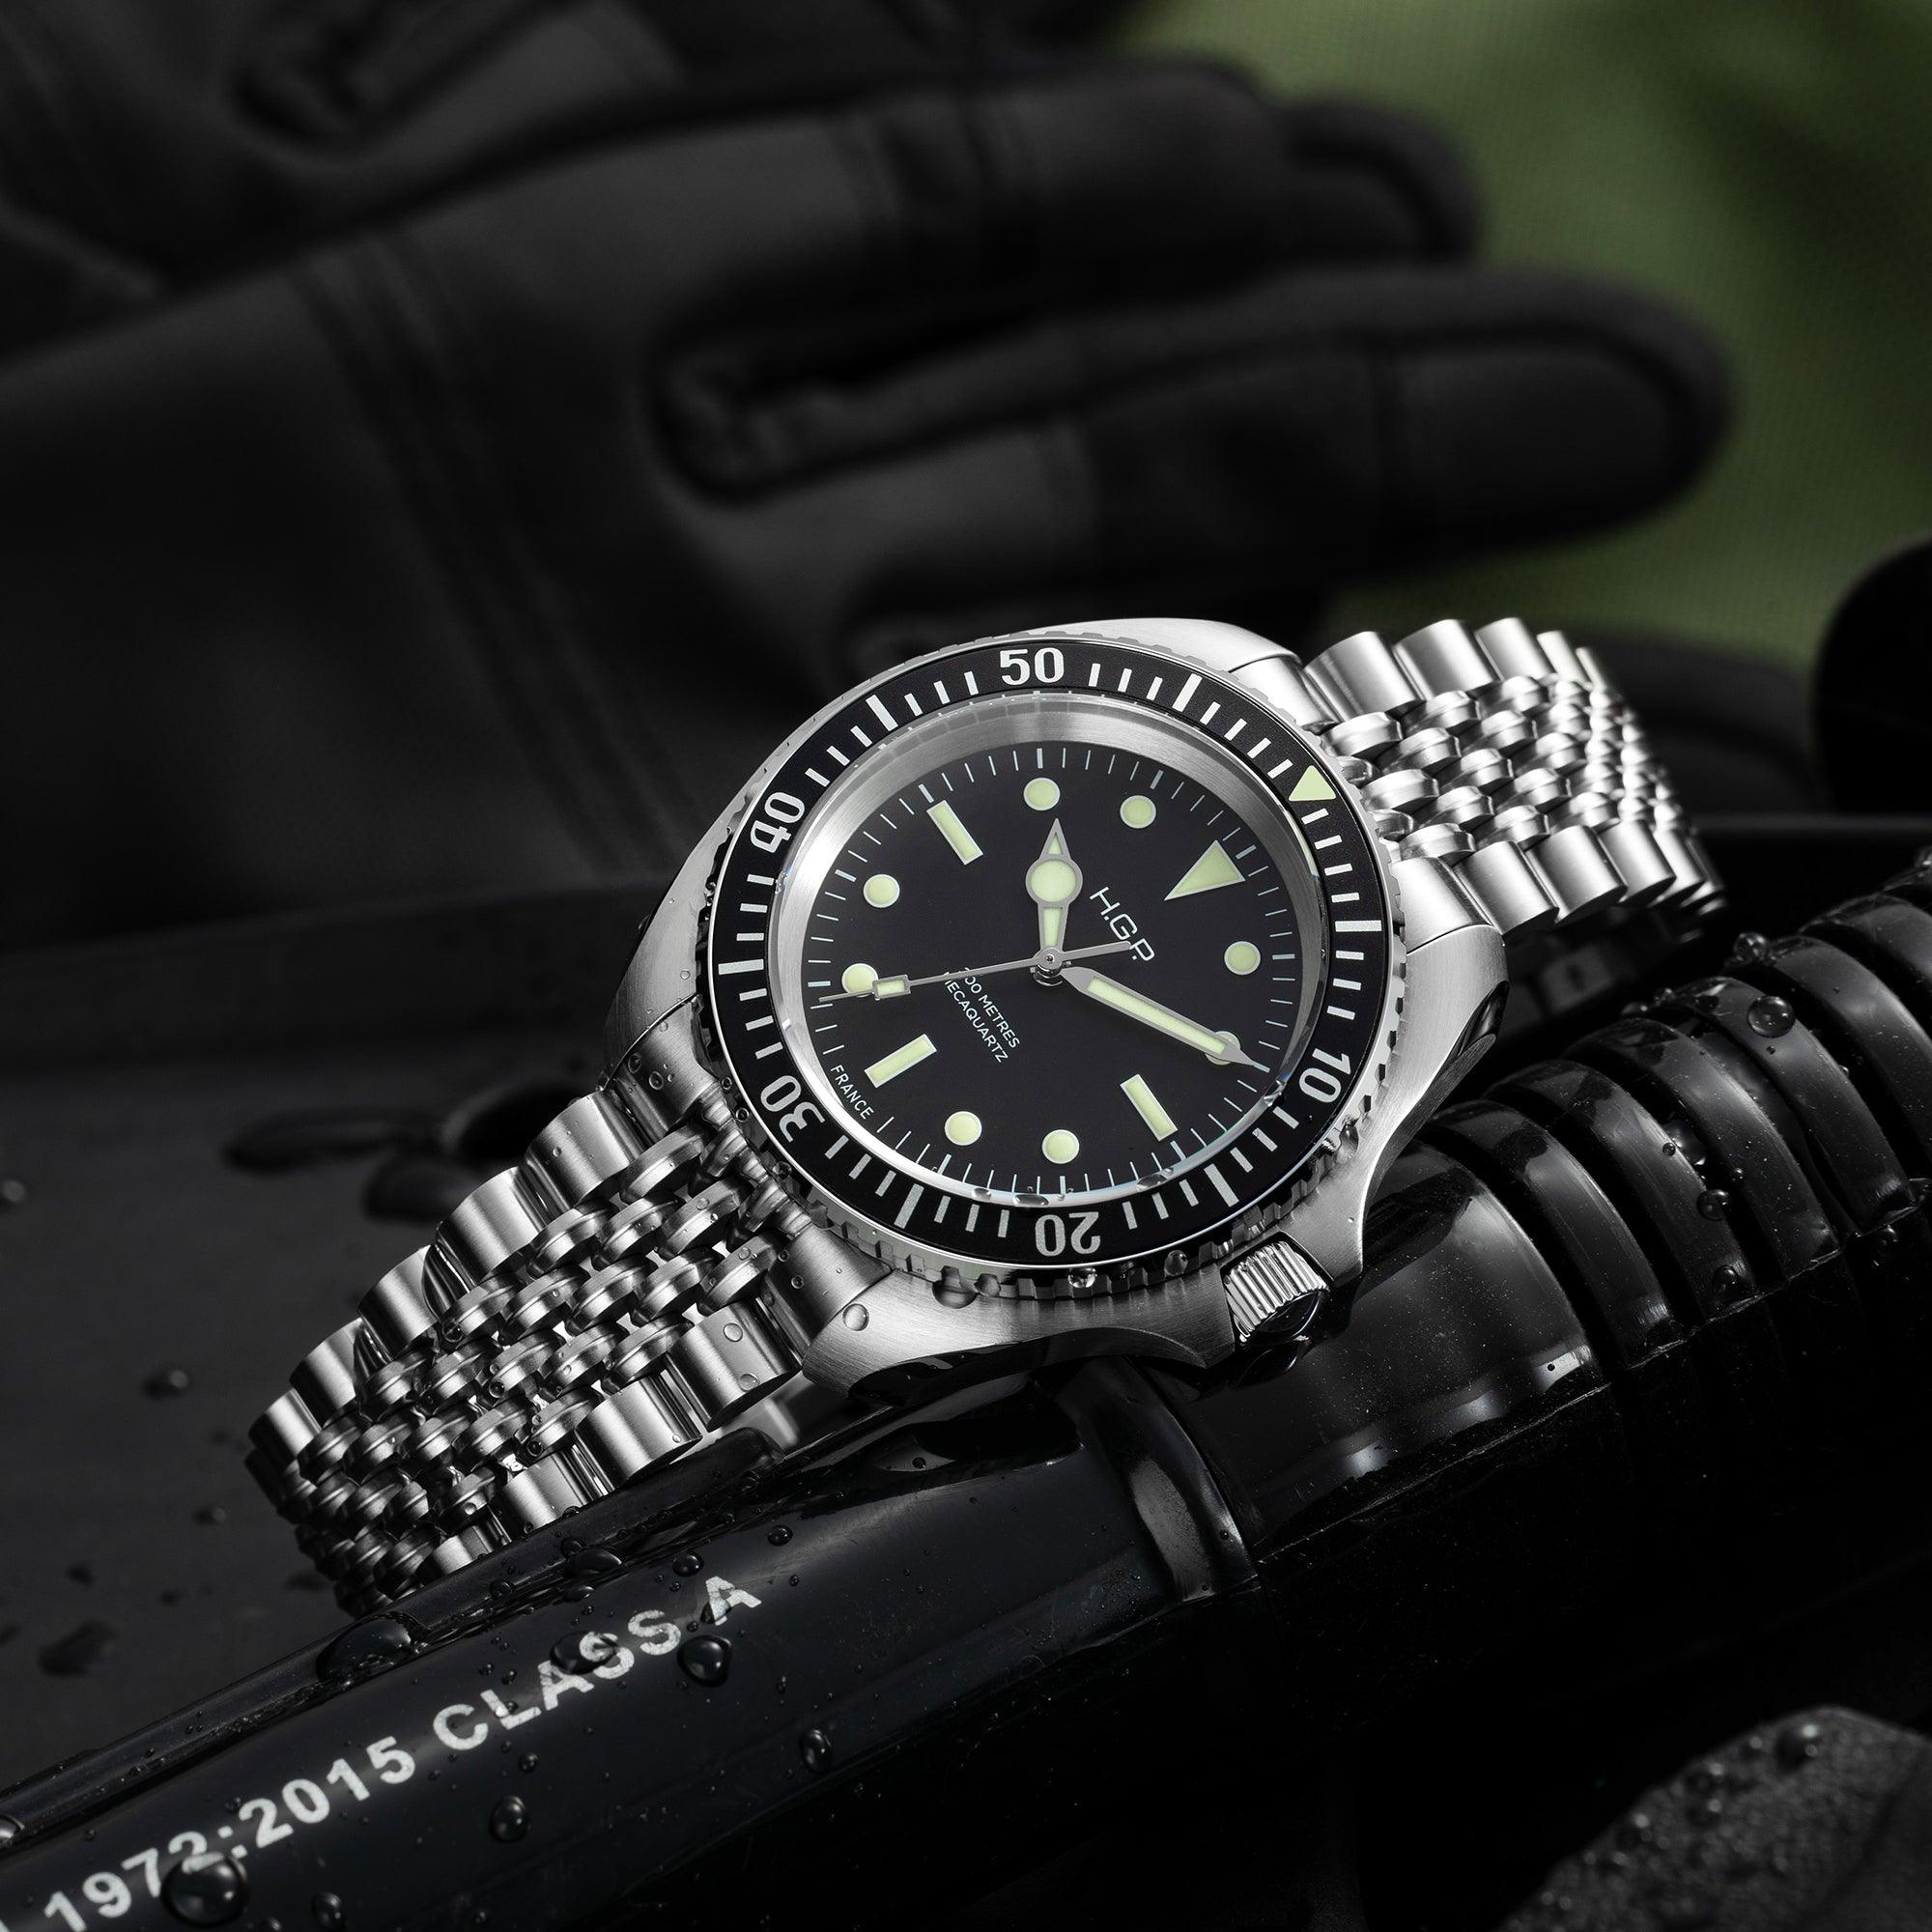 Diver 200M Mecaquartz Bracelet Diving Watch - HGP - Dive Watches